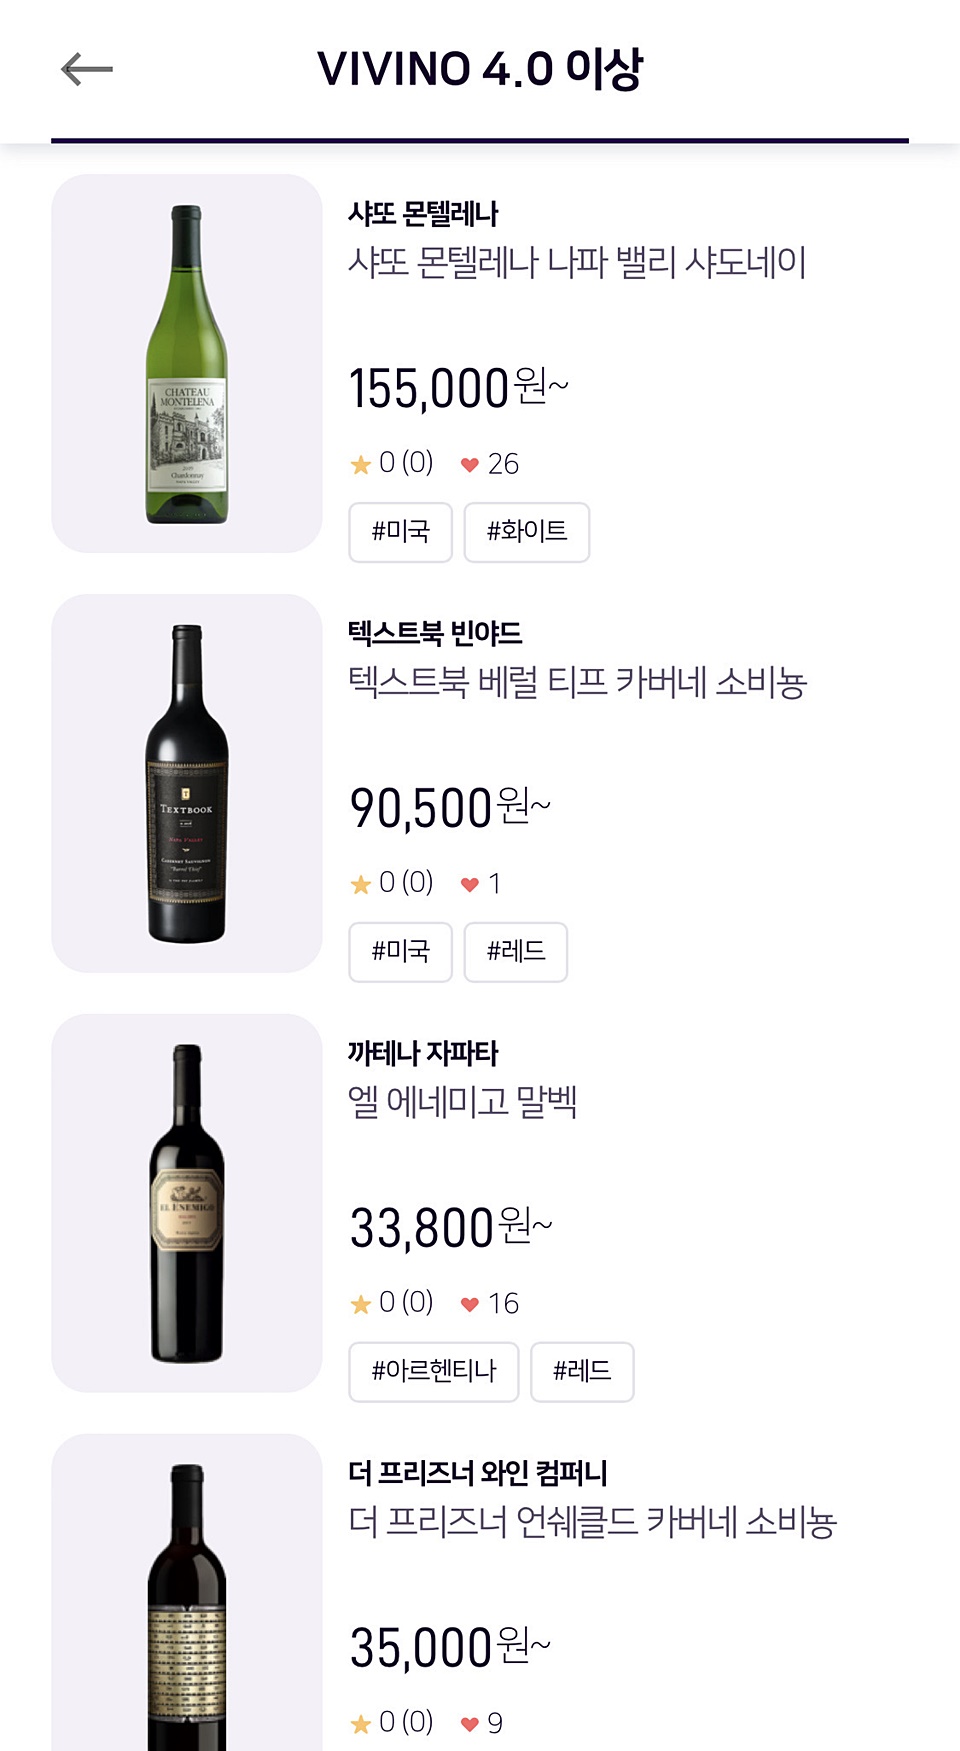 VIVINO 4.0 이상의 와인들을 확인하고 가까운 거리의 와인전문 소매샵에서 와인을 구매하고 픽업이 가능하다